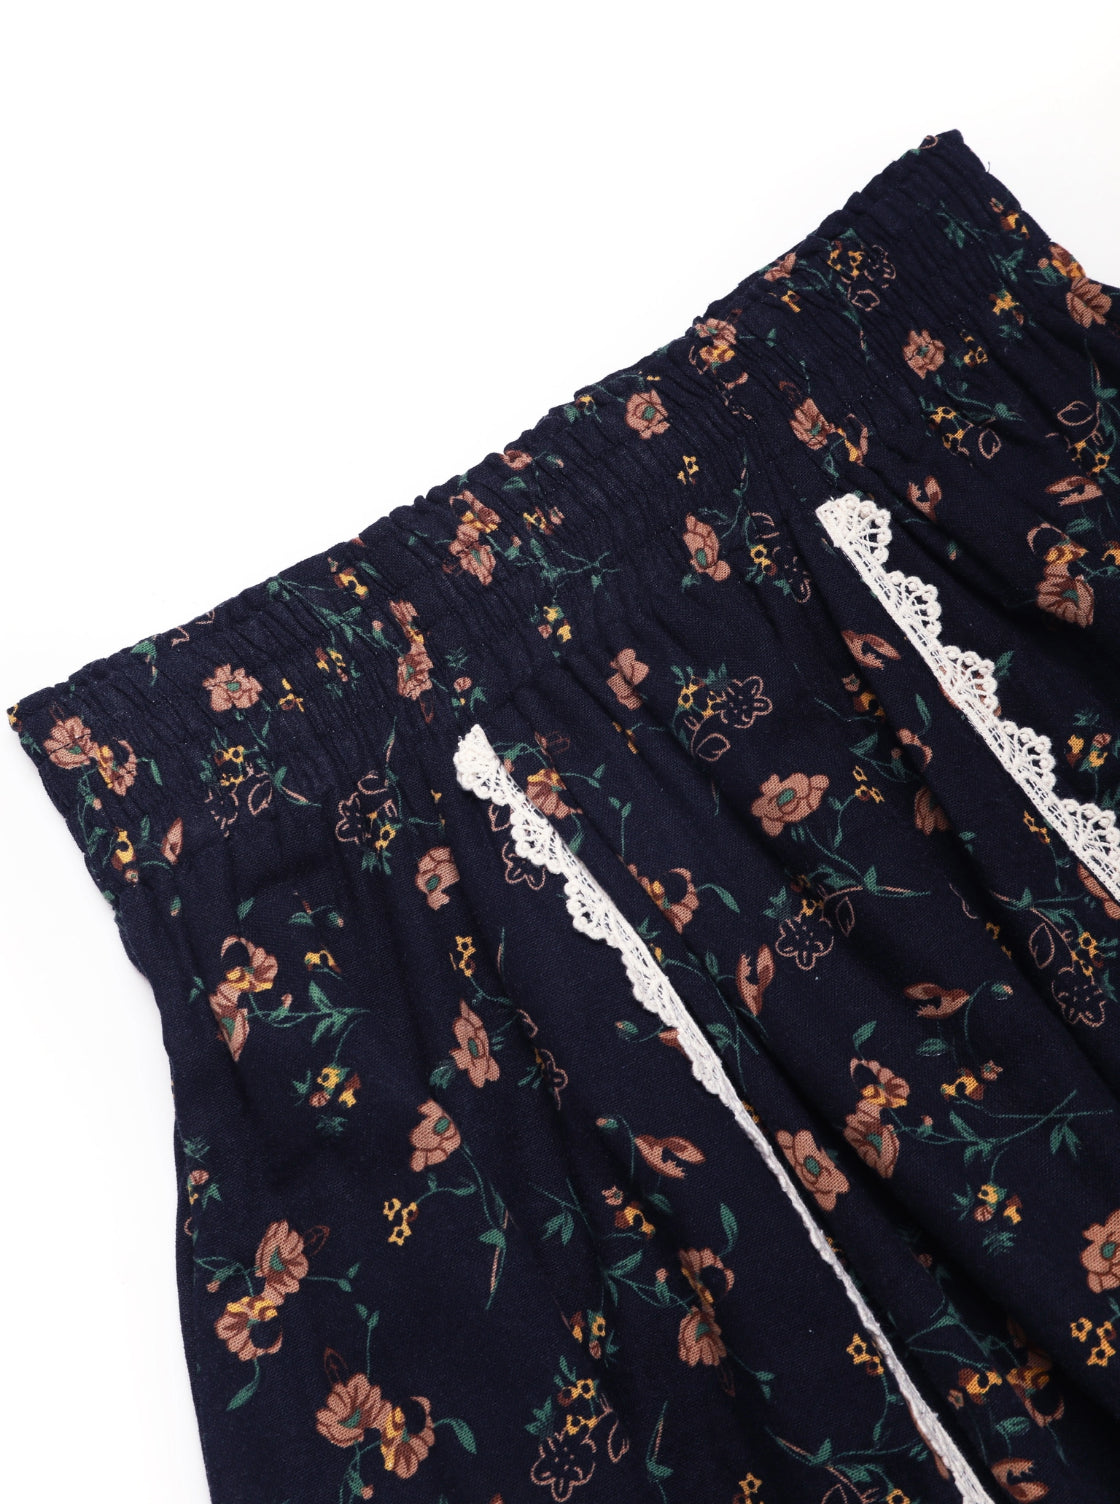 Dahlia Floral Cotton Skirt (Petite)